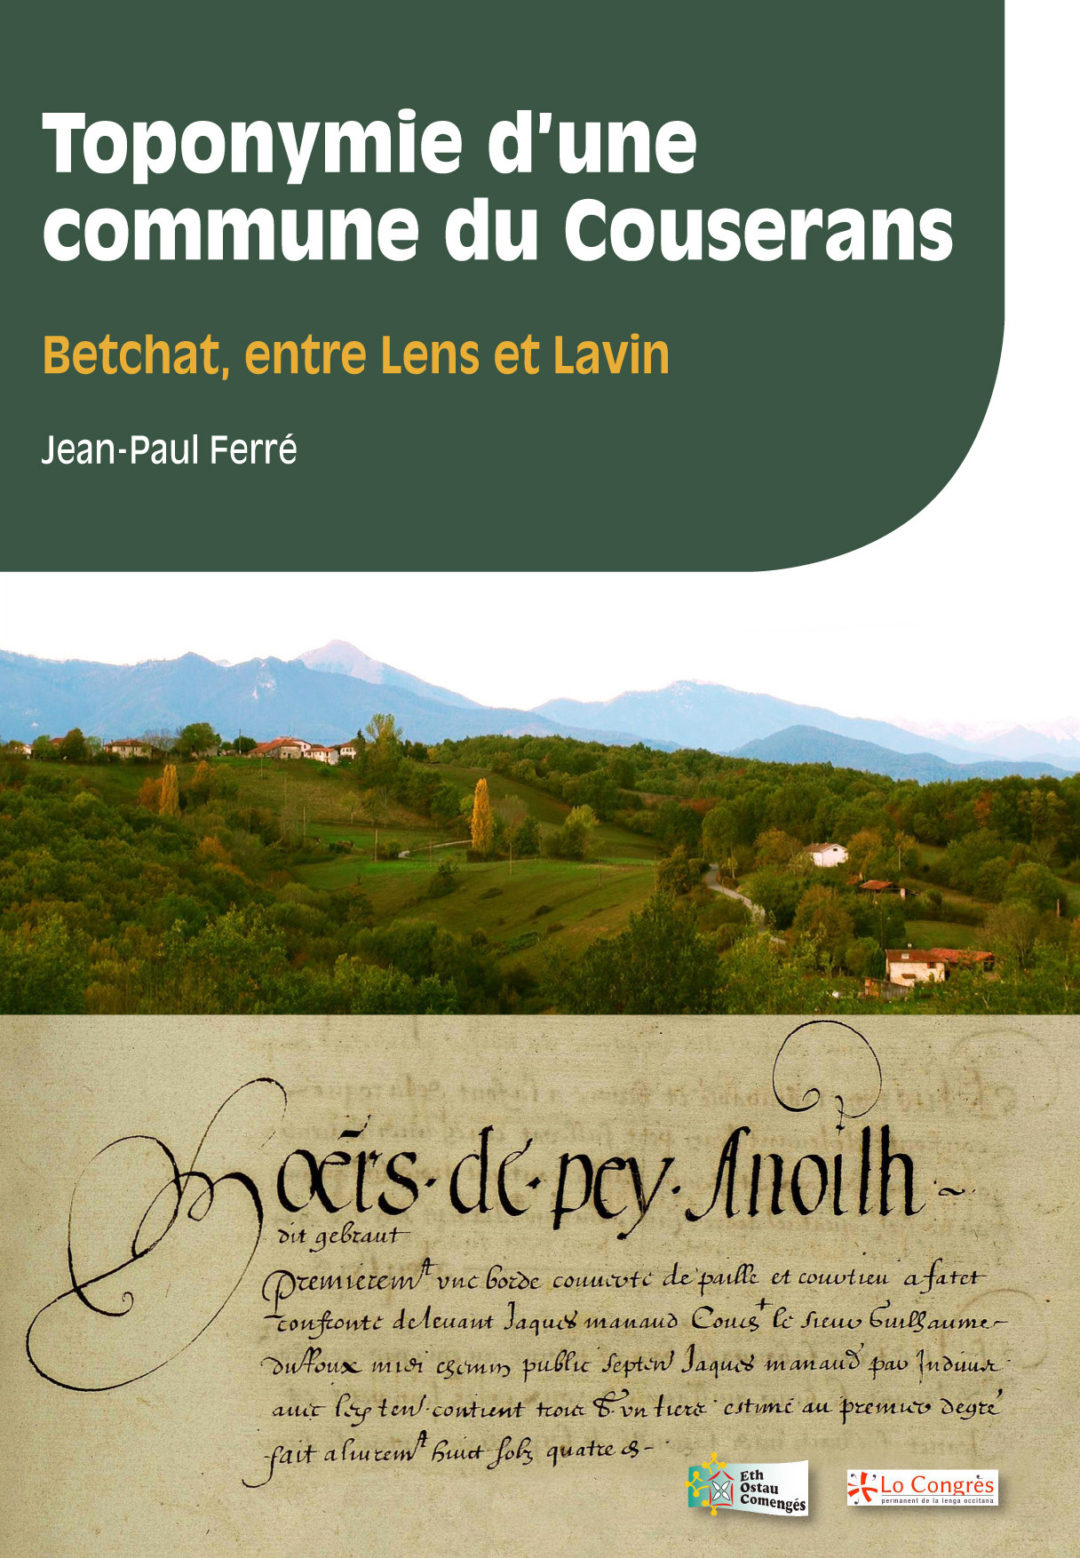 Toponymie d’une commune du Couserans : Betchat, entre Lens et Lavin